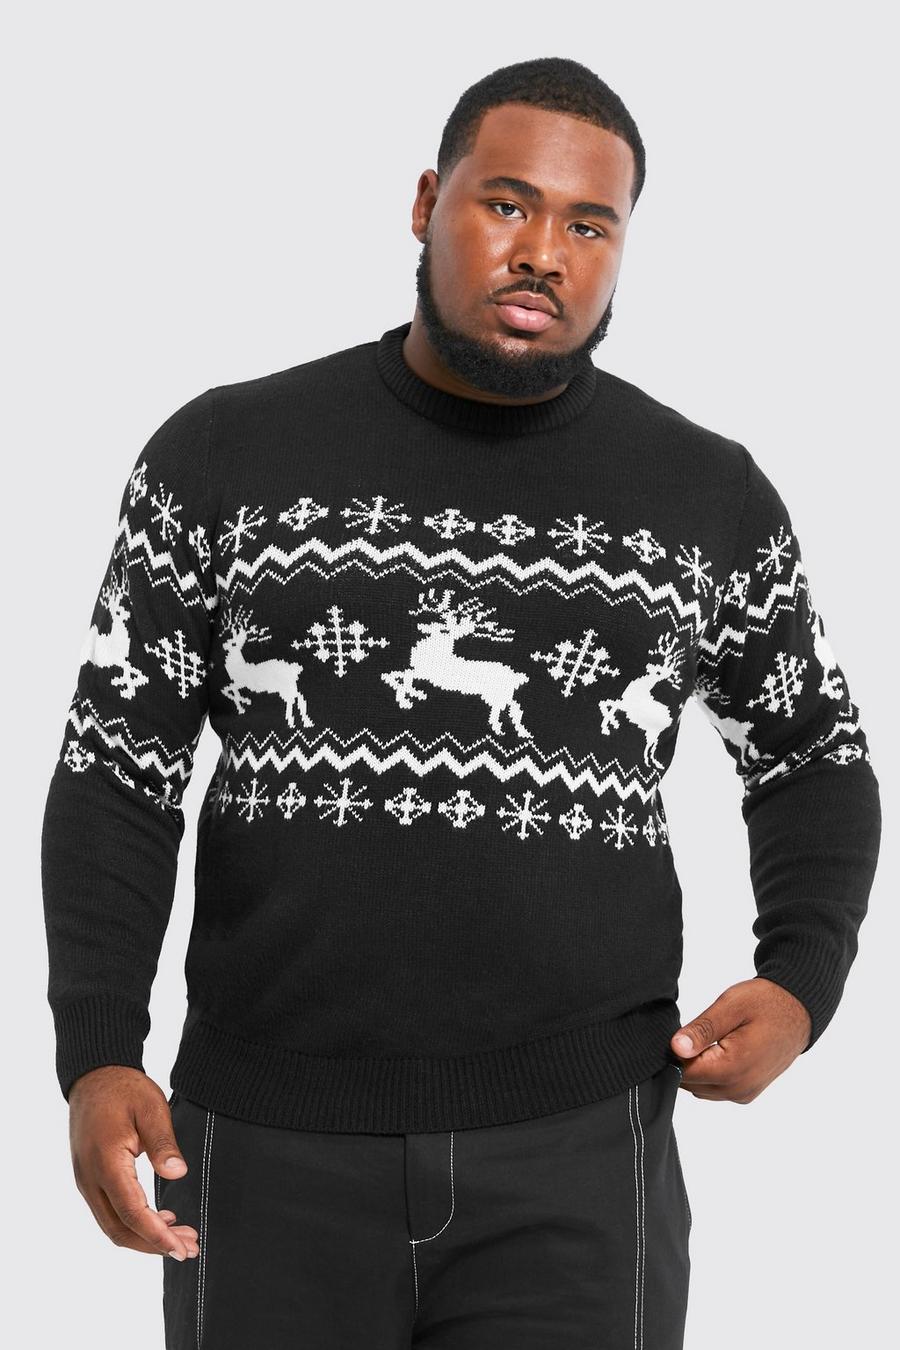 שחור סוודר לחג המולד עם פאנל אייל הצפון בסגנון פייר אייל, מידות גדולות